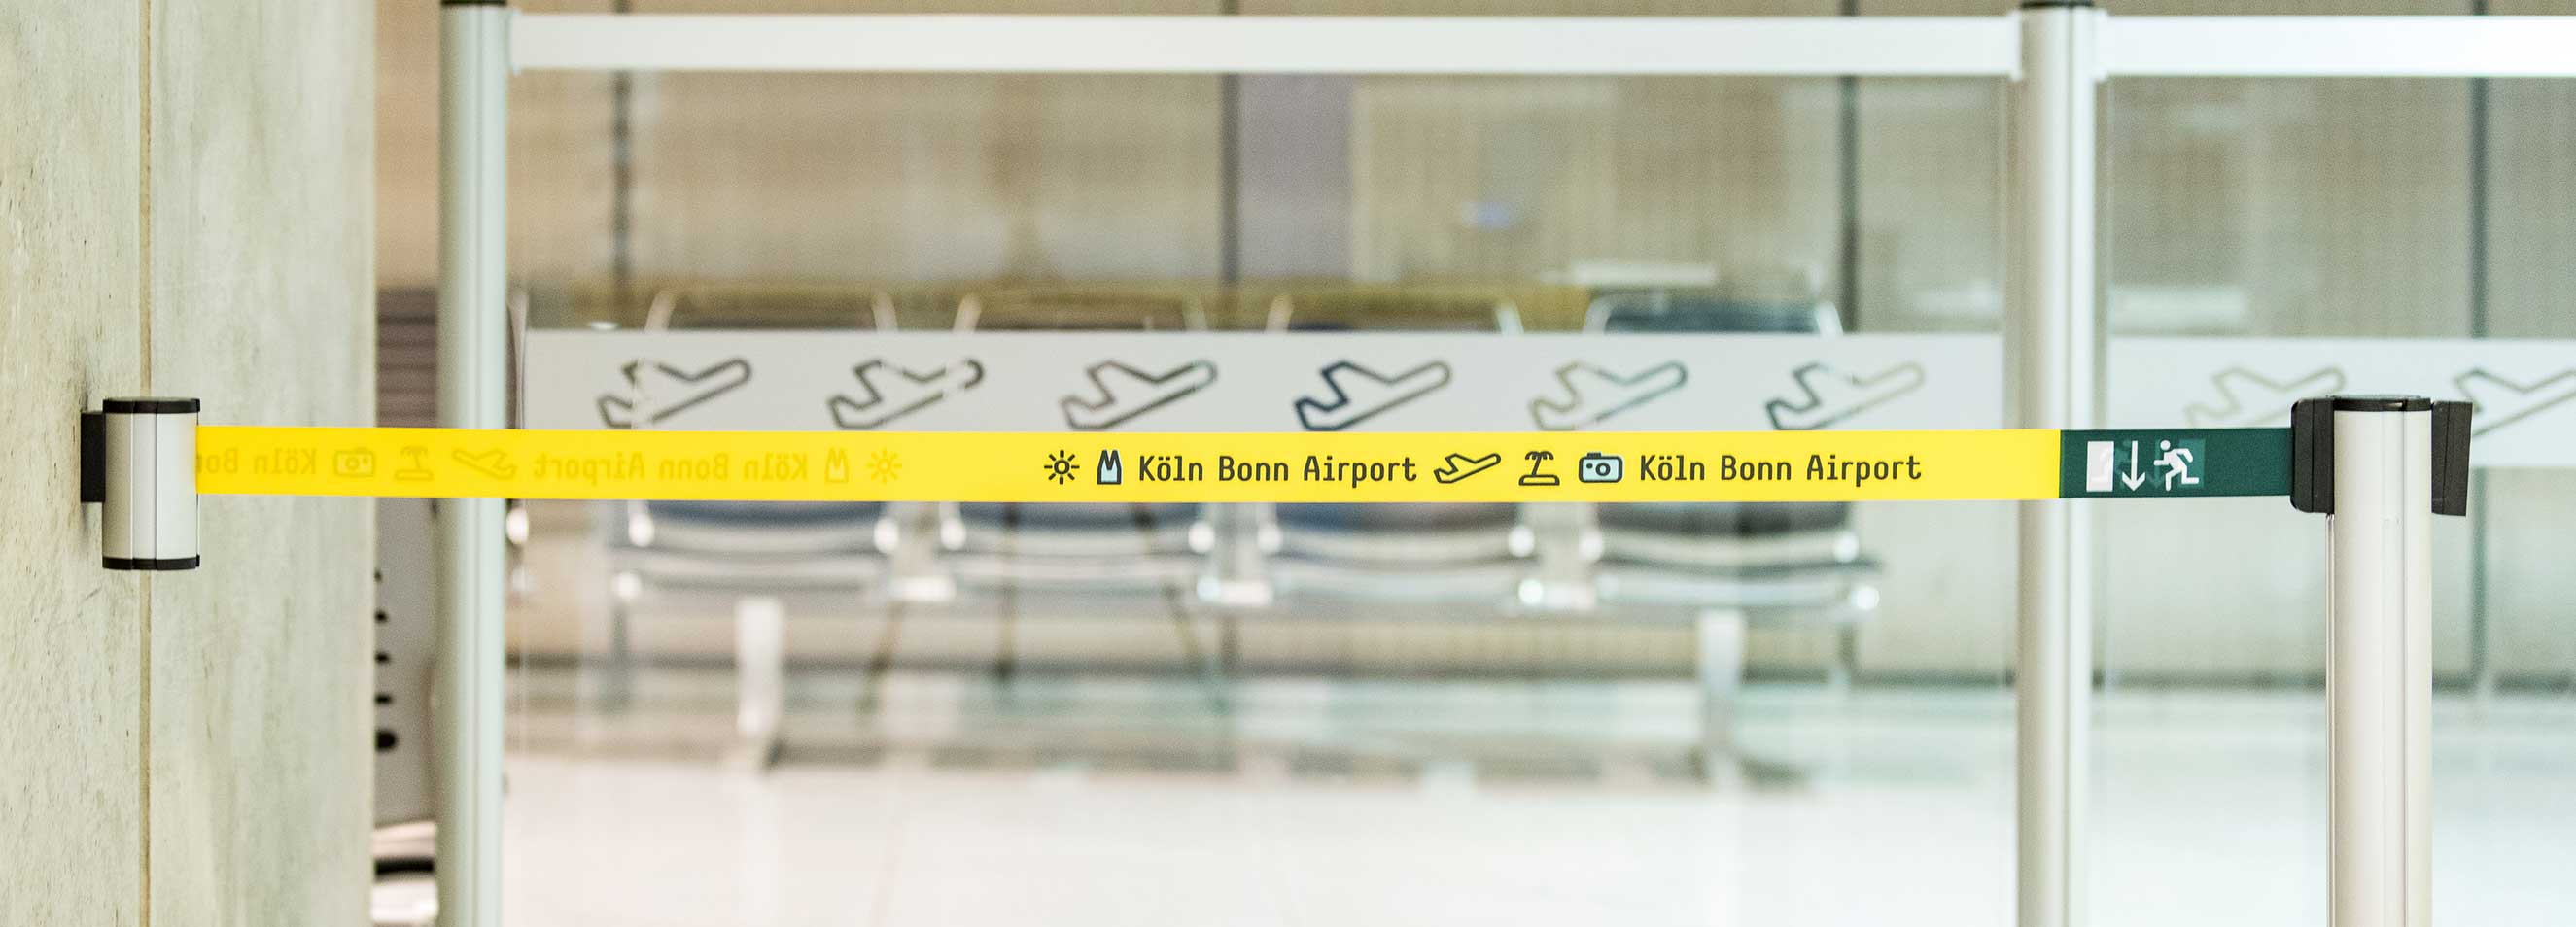 Wandgurtkassette mit ausgezogenem Gurt am Flughafen 